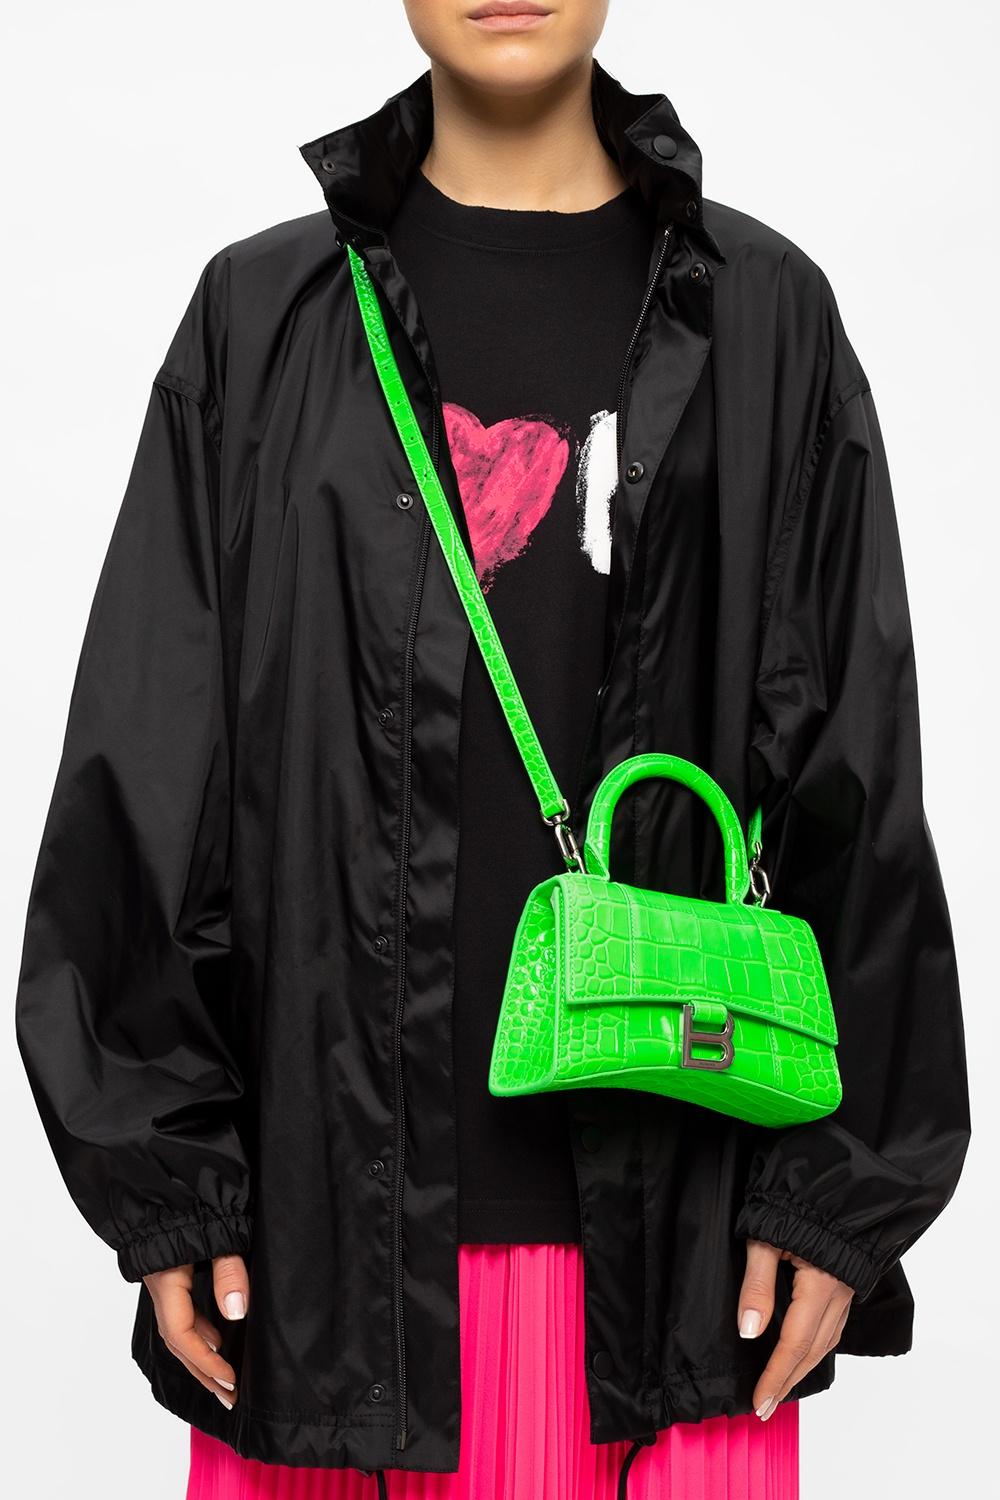 Balenciaga 'hourglass Xs' Shoulder Bag in Green